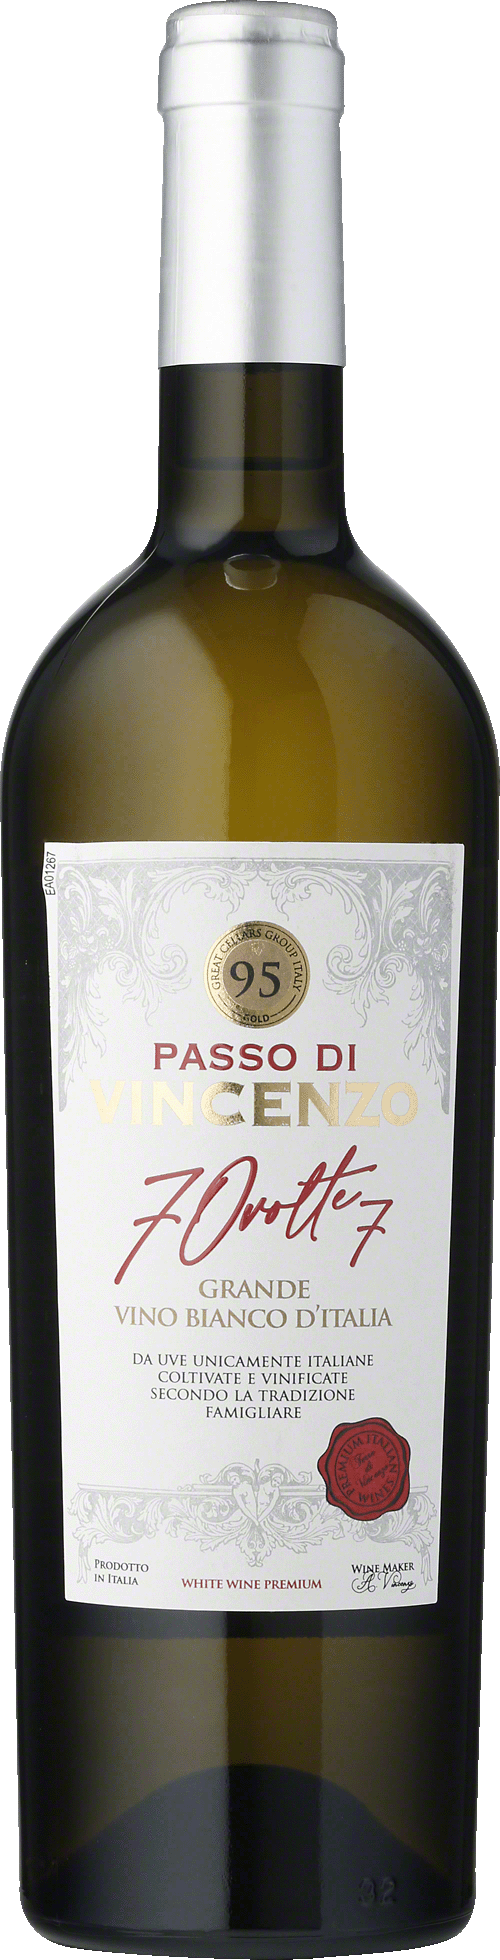 Passo di Vincenzo Grande Vino Bianco d'Italia